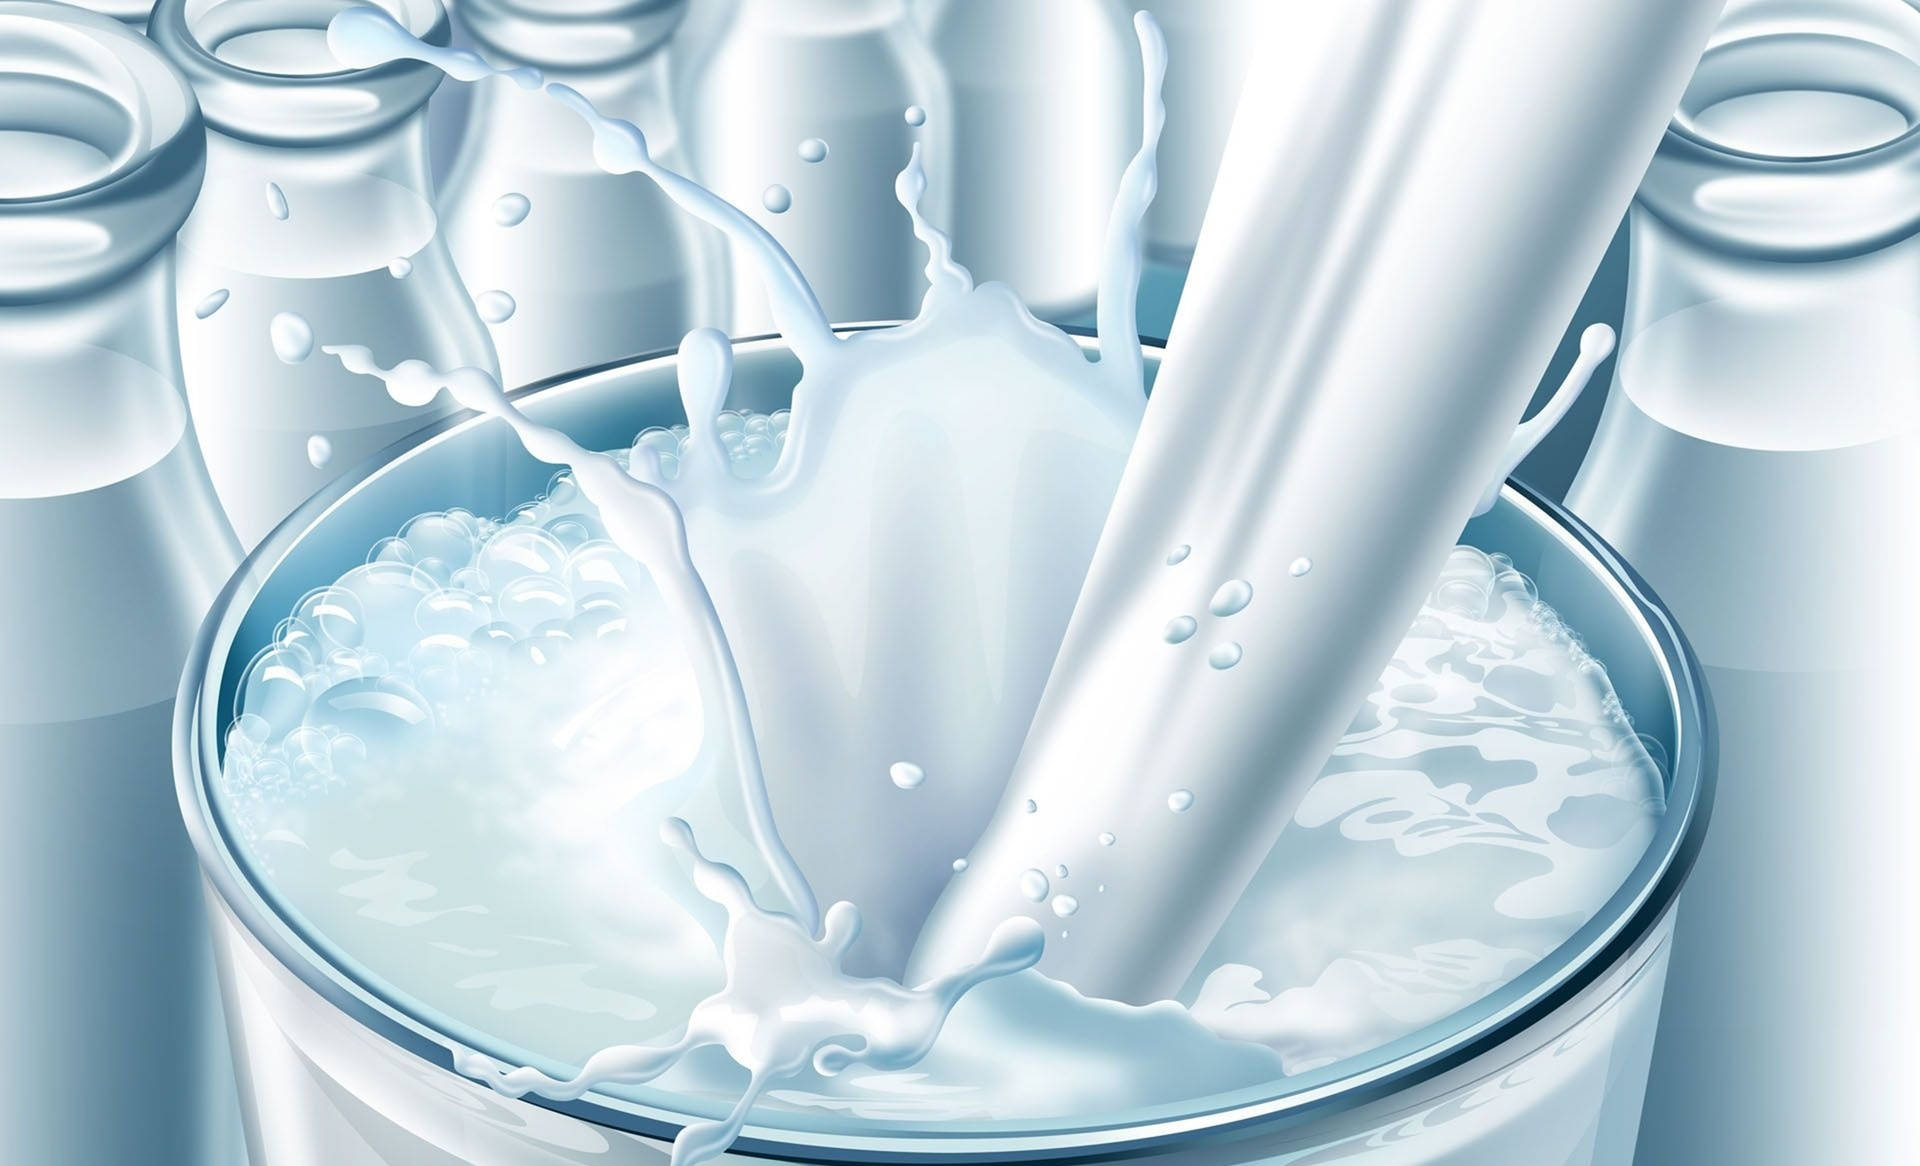 Fresh Dairy Milk In Glass Bottles Background